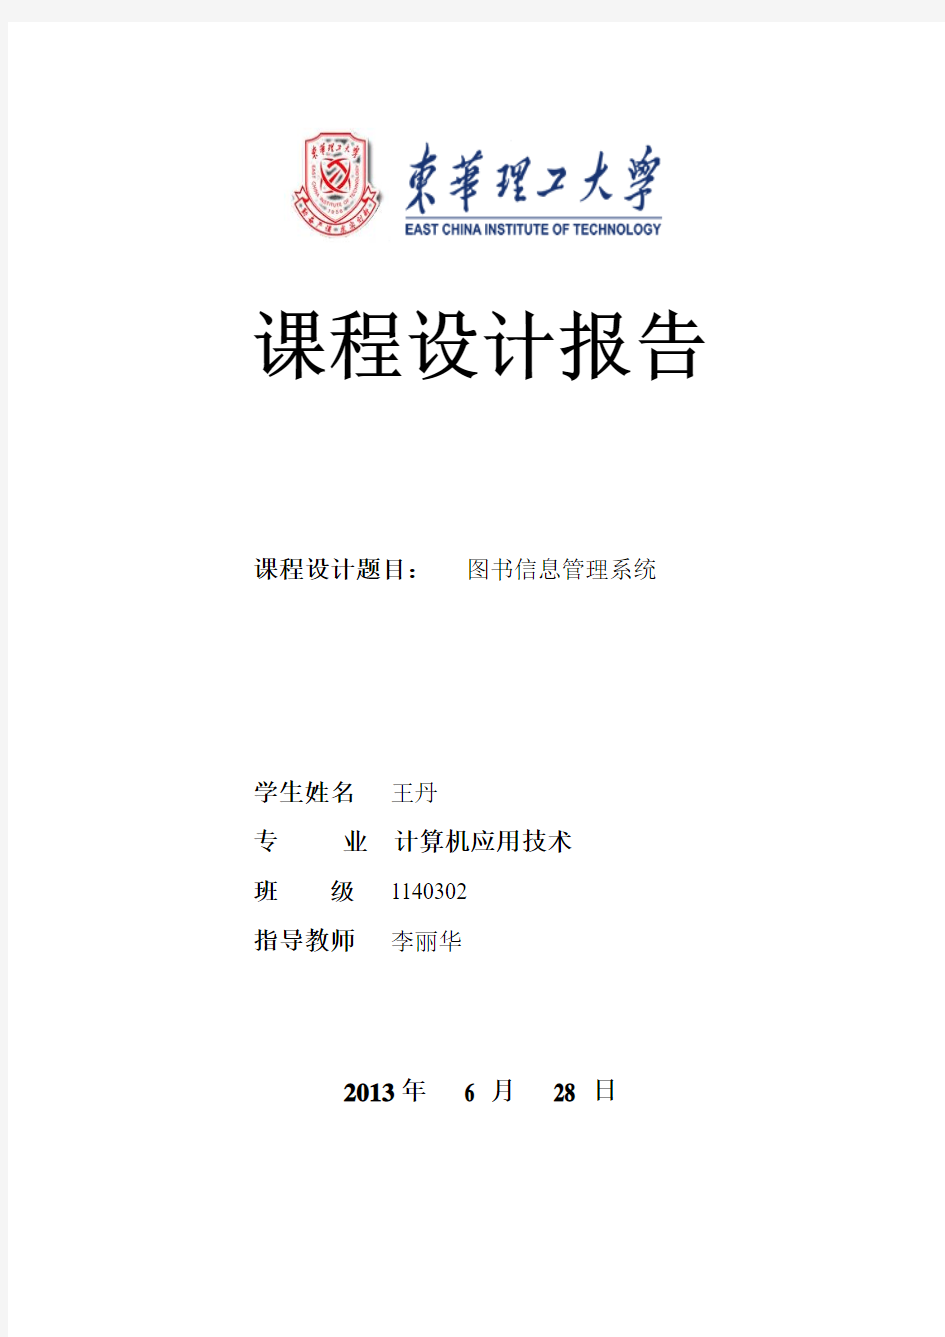 201140030224  王丹  图书信息管理系统